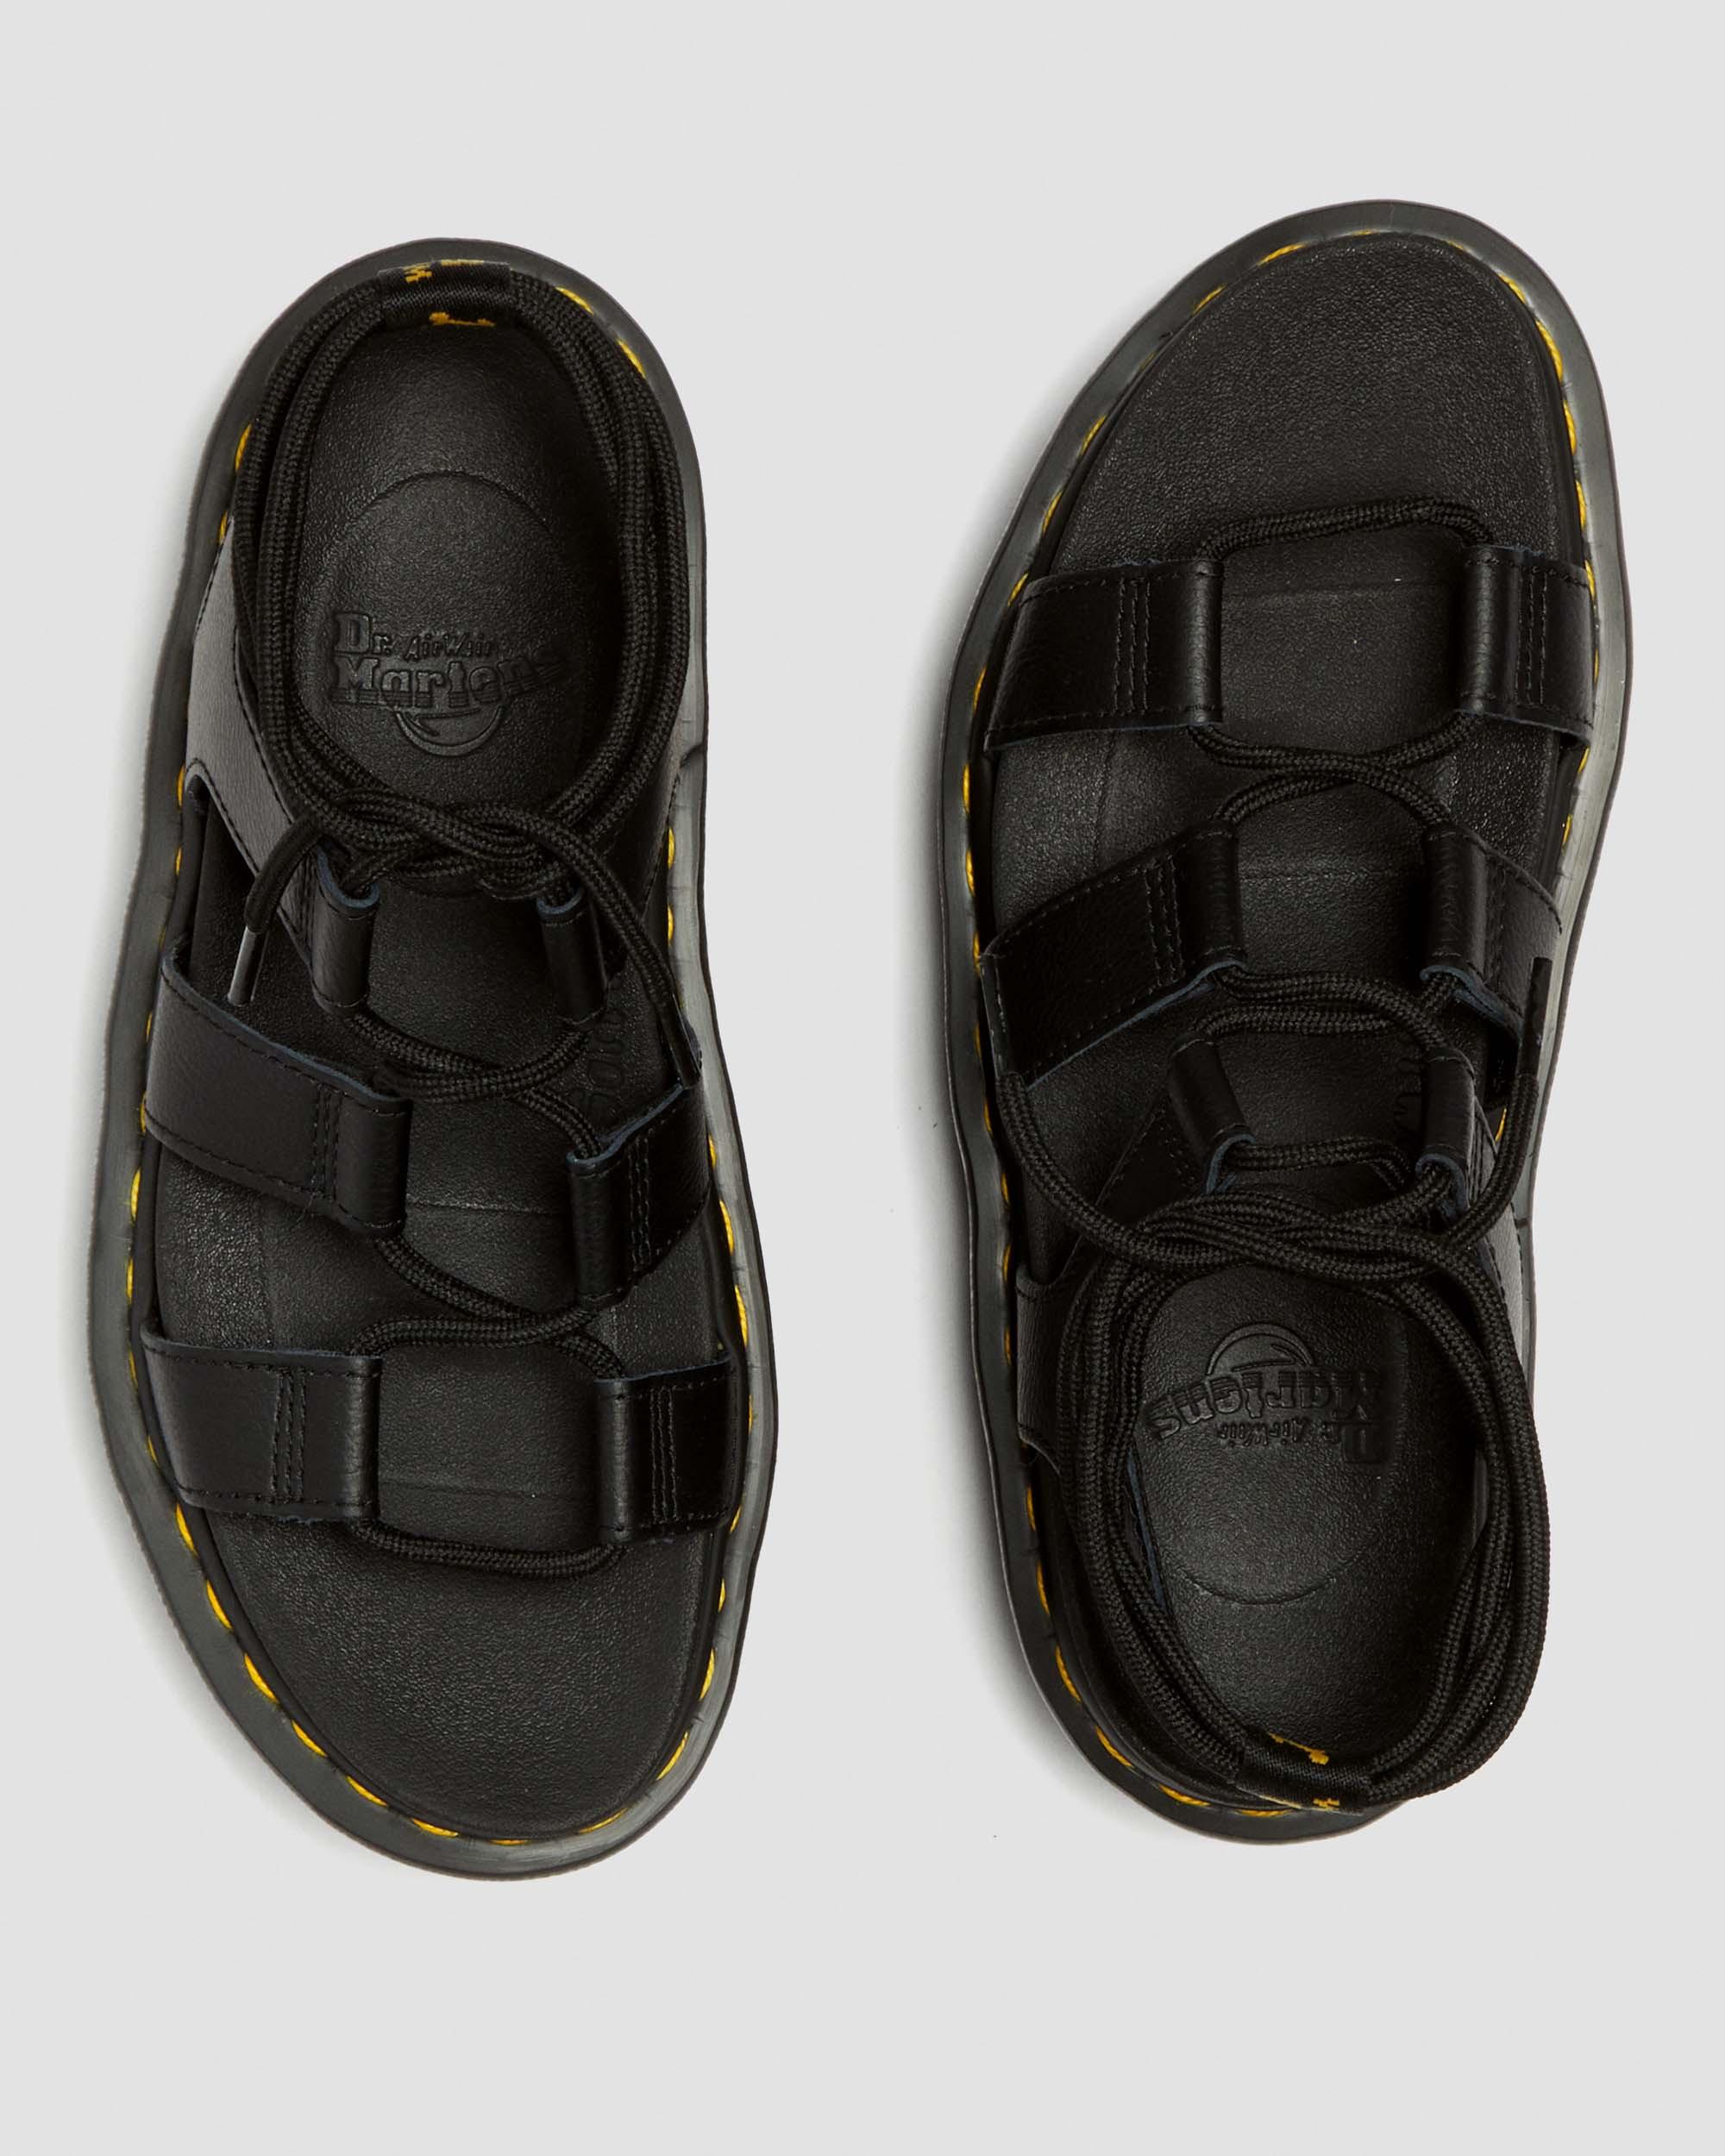 Nartilla Leather Gladiator Platform Sandals in Black